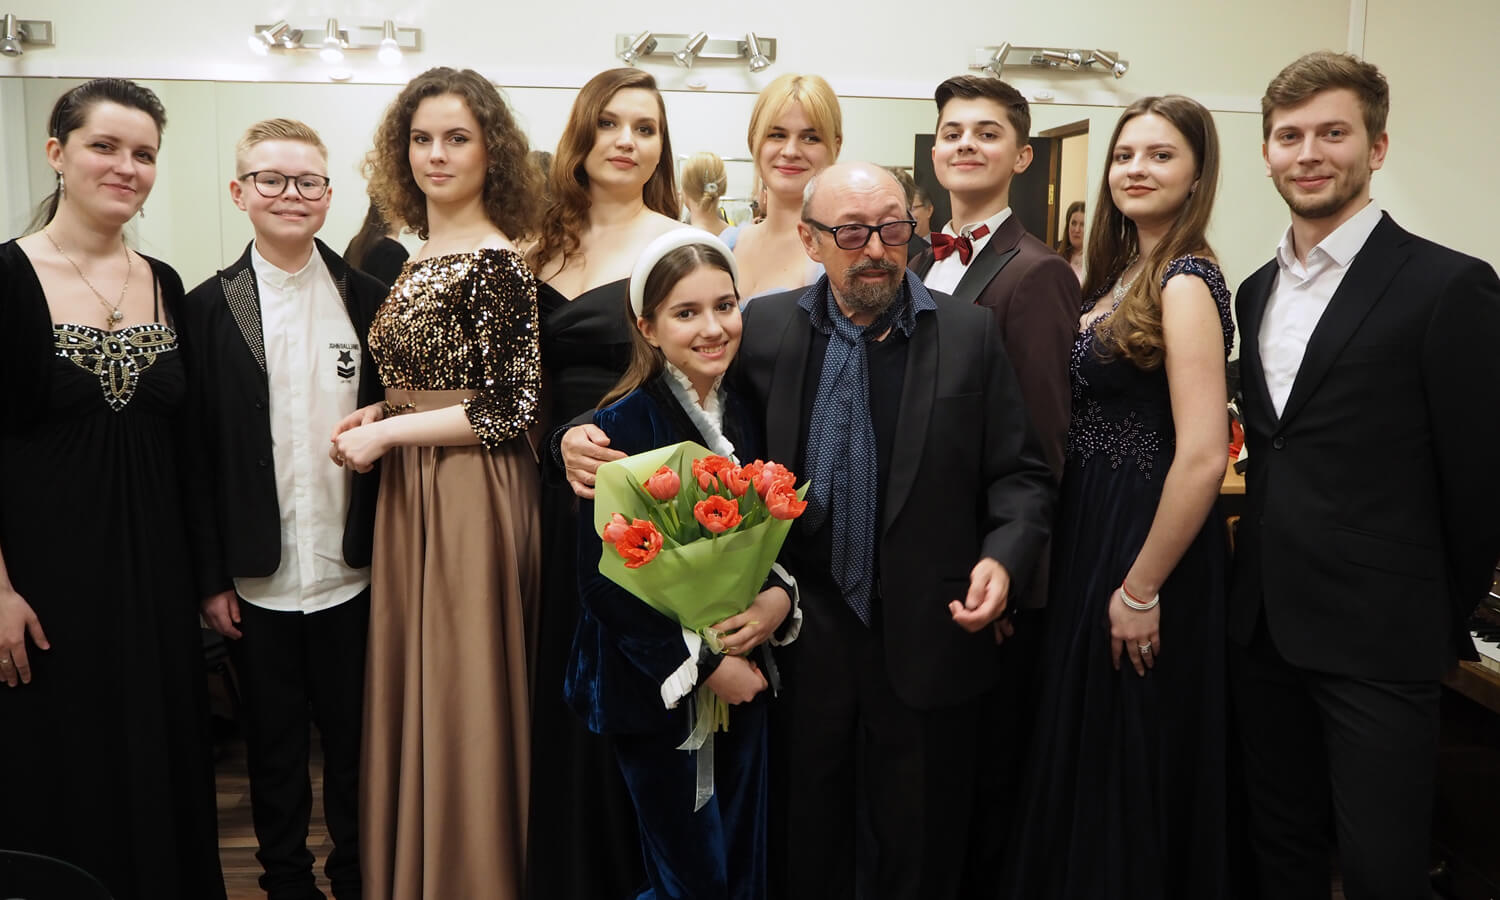 08 апреля 2022 состоялся концерт «Голос» в Камерном зале Московской государственной академической филармонии